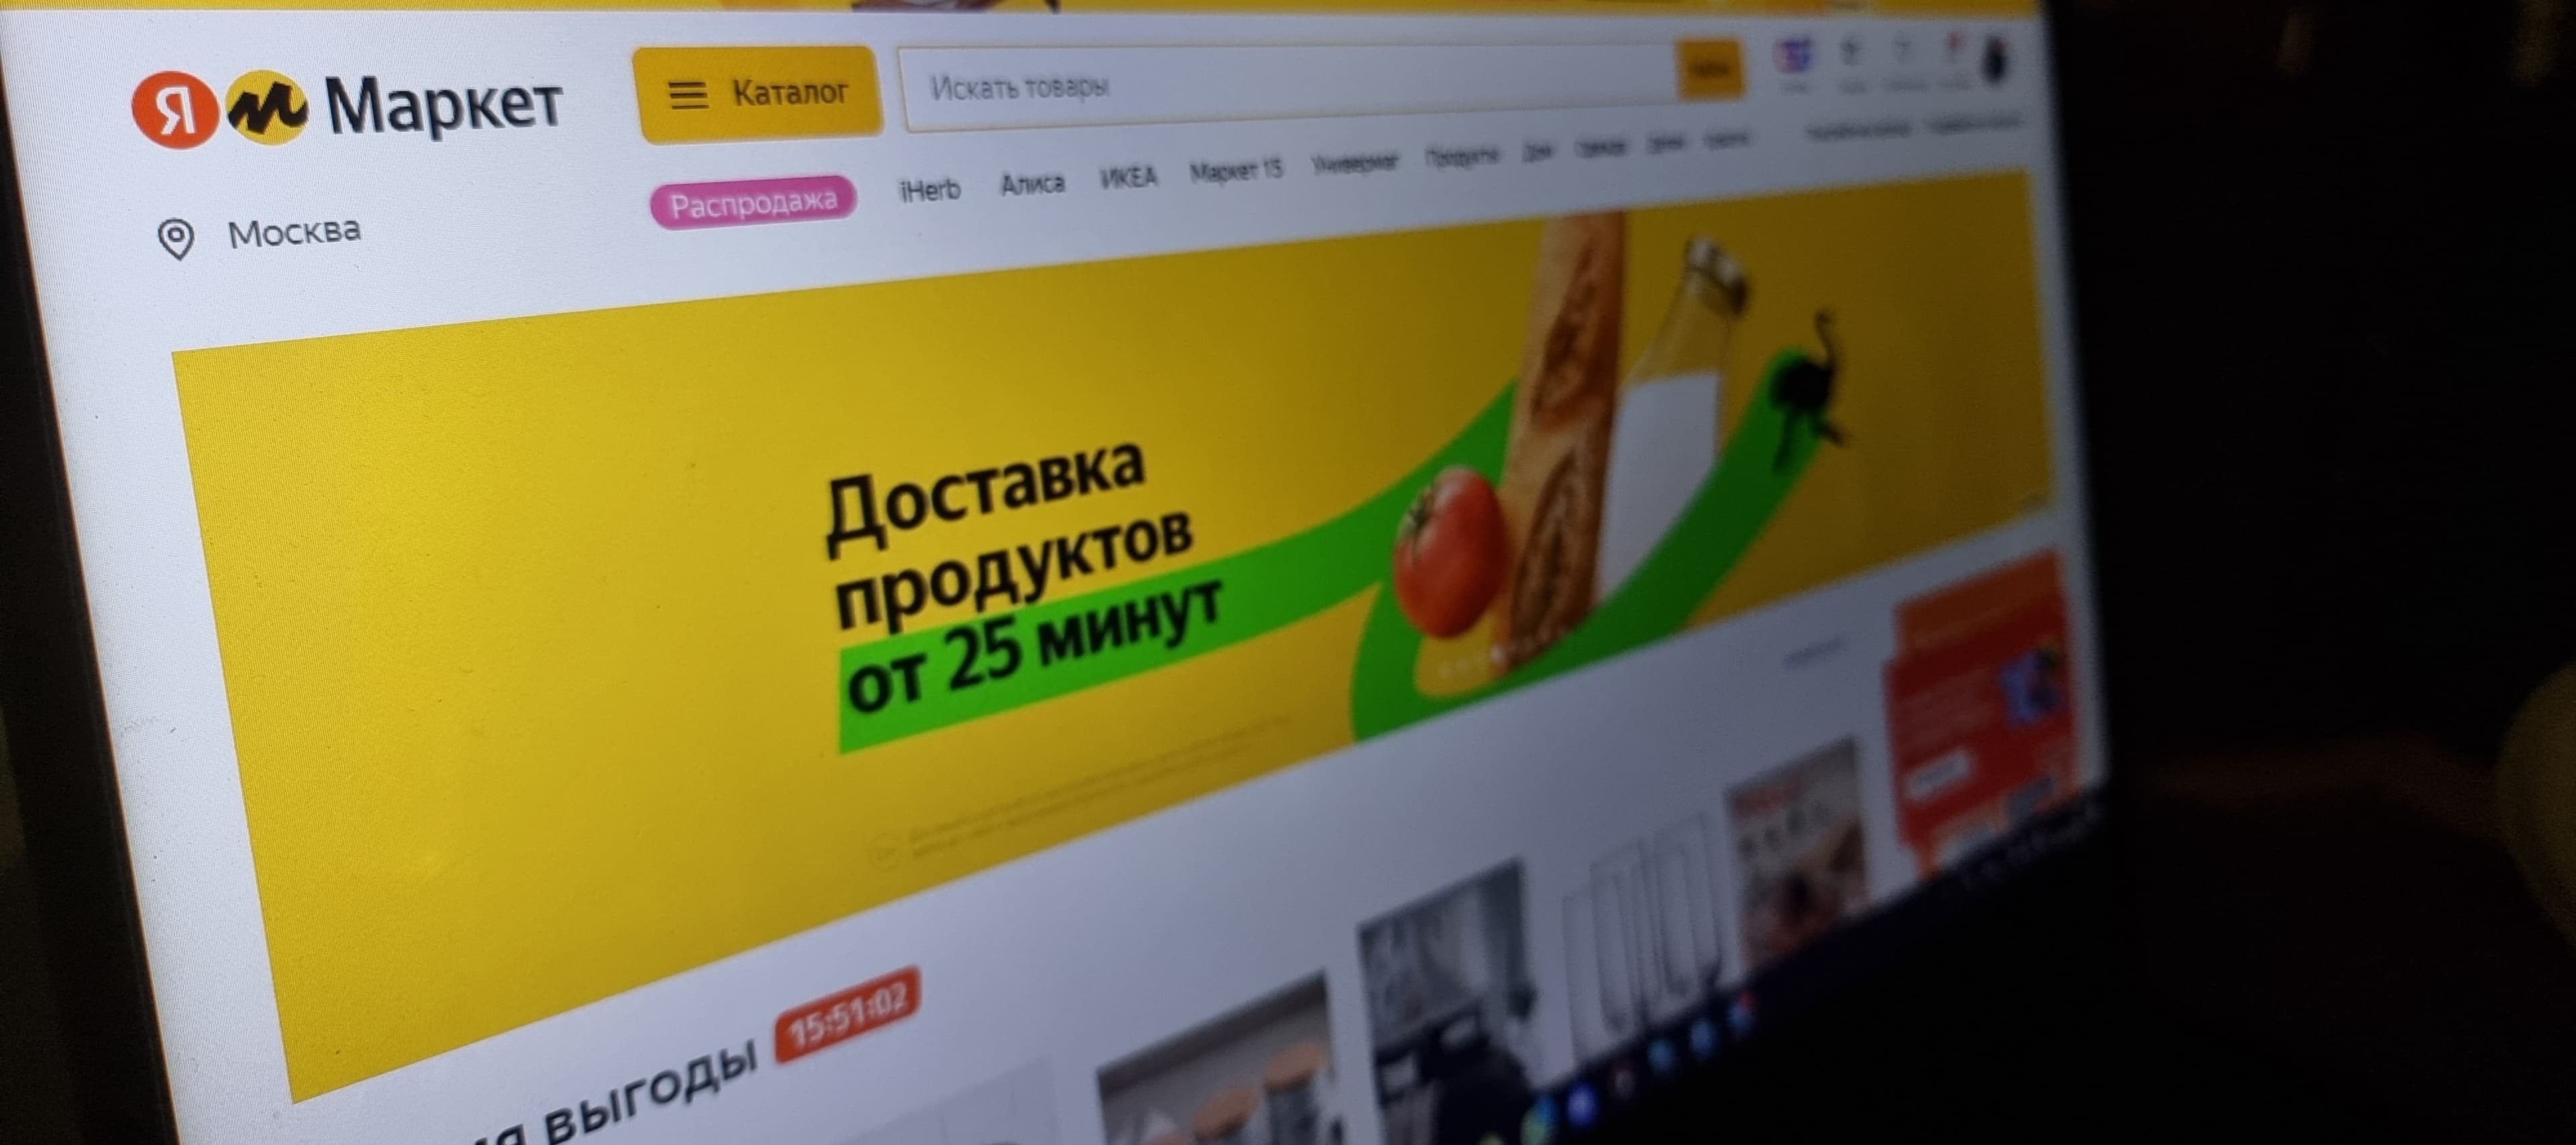 Фото новости: "«Яндекс.Маркет» впервые вошел в топ-3 интернет-ритейлеров в России"